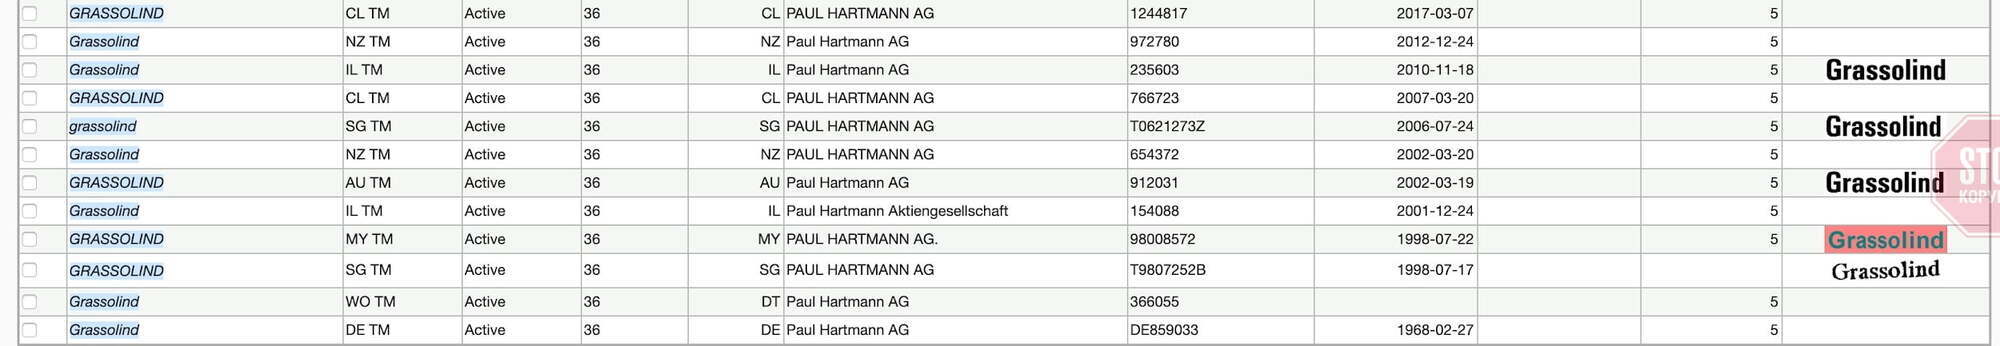  Власником усіх торгових марок є Paul Hartmann AG